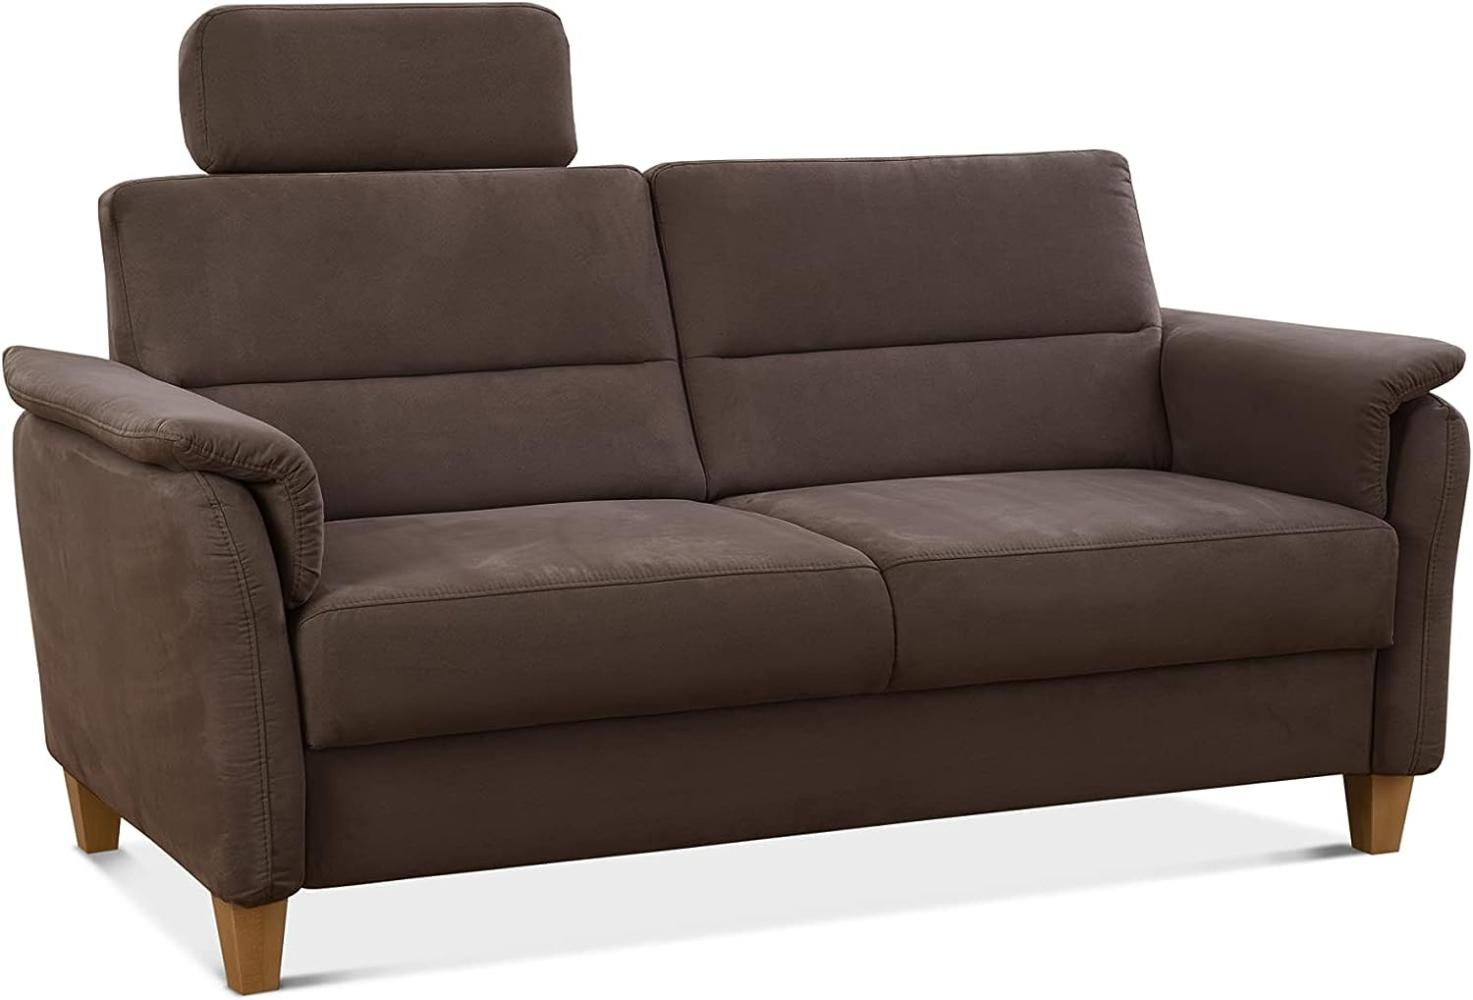 CAVADORE 3er-Sofa Palera mit Federkern / Kompakte Dreisitzer-Couch im Landhaus-Stil / inkl. 1 Kopfstütze / 179 x 89 x 89 / Mikrofaser, Braun Bild 1